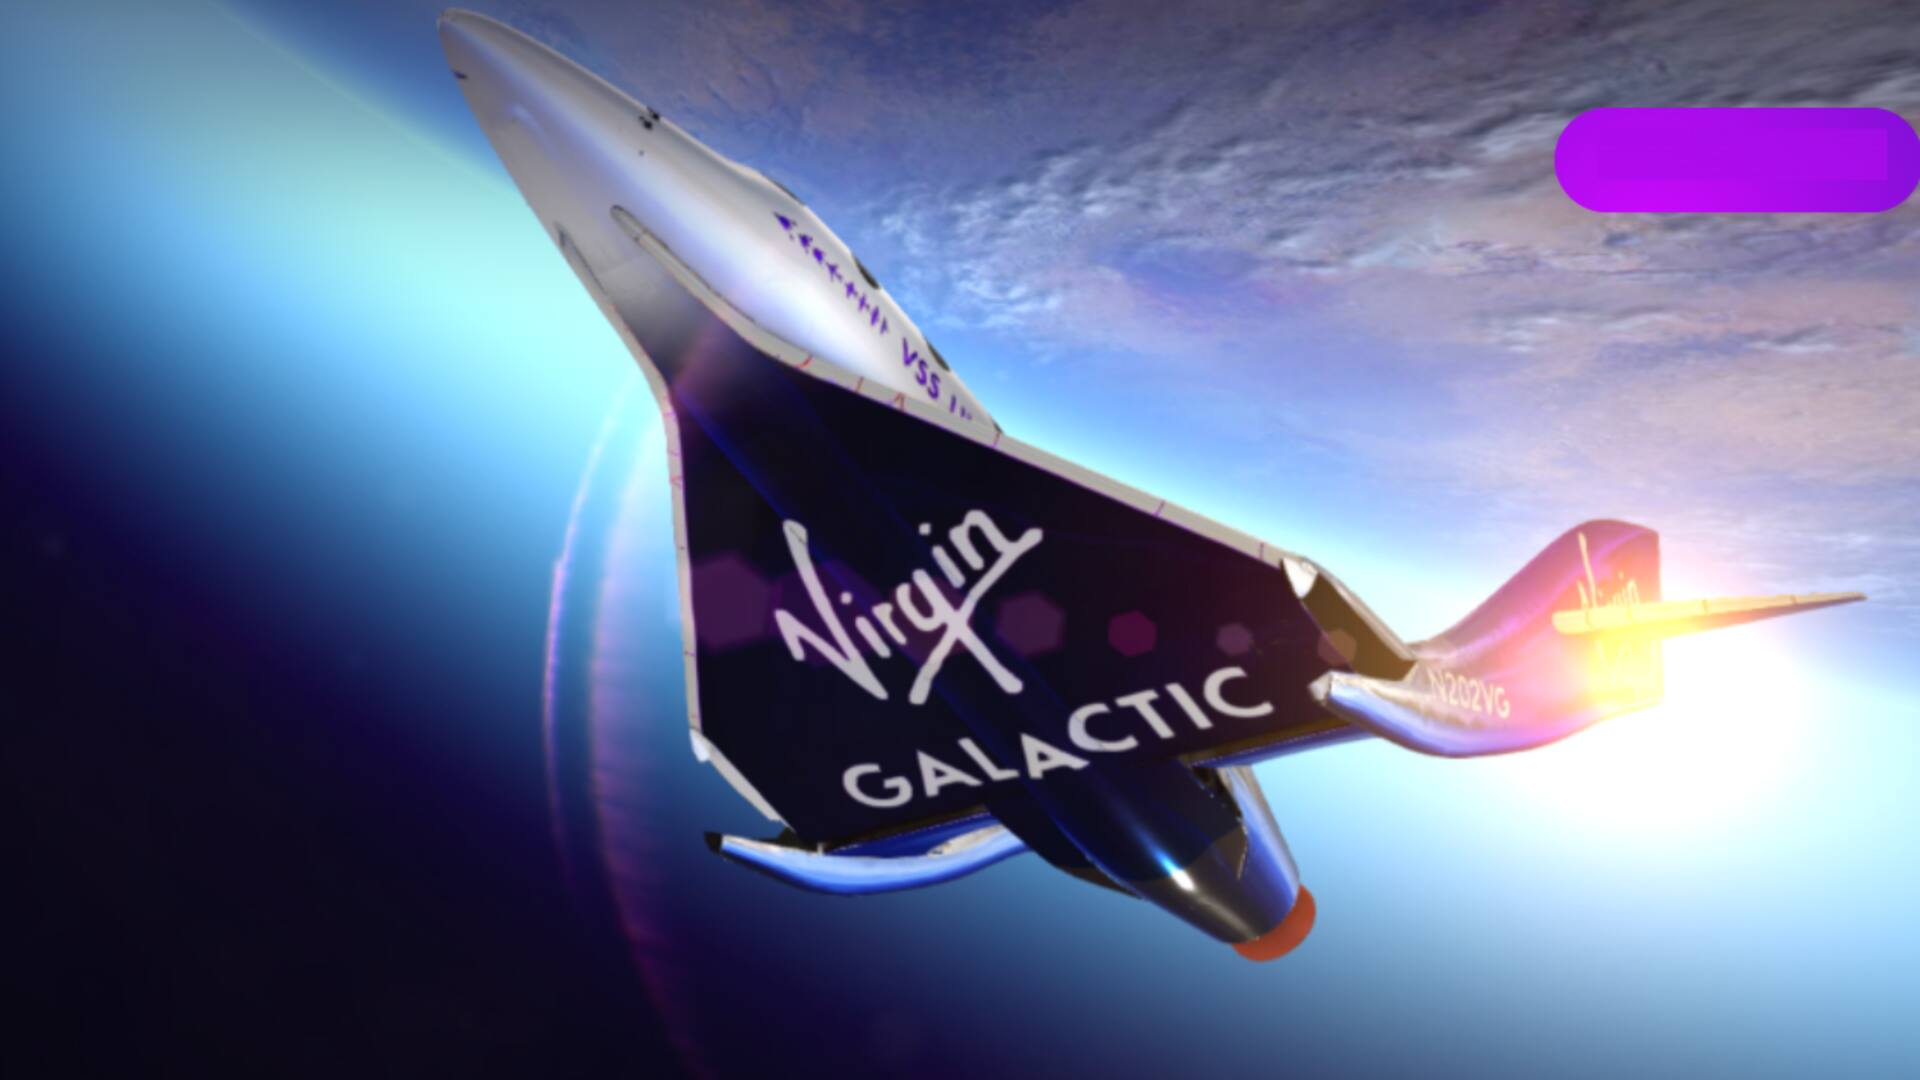 वर्जिन गैलैक्टिक ने लॉन्च की अपनी पहली व्यावसायिक अंतरिक्ष उड़ान